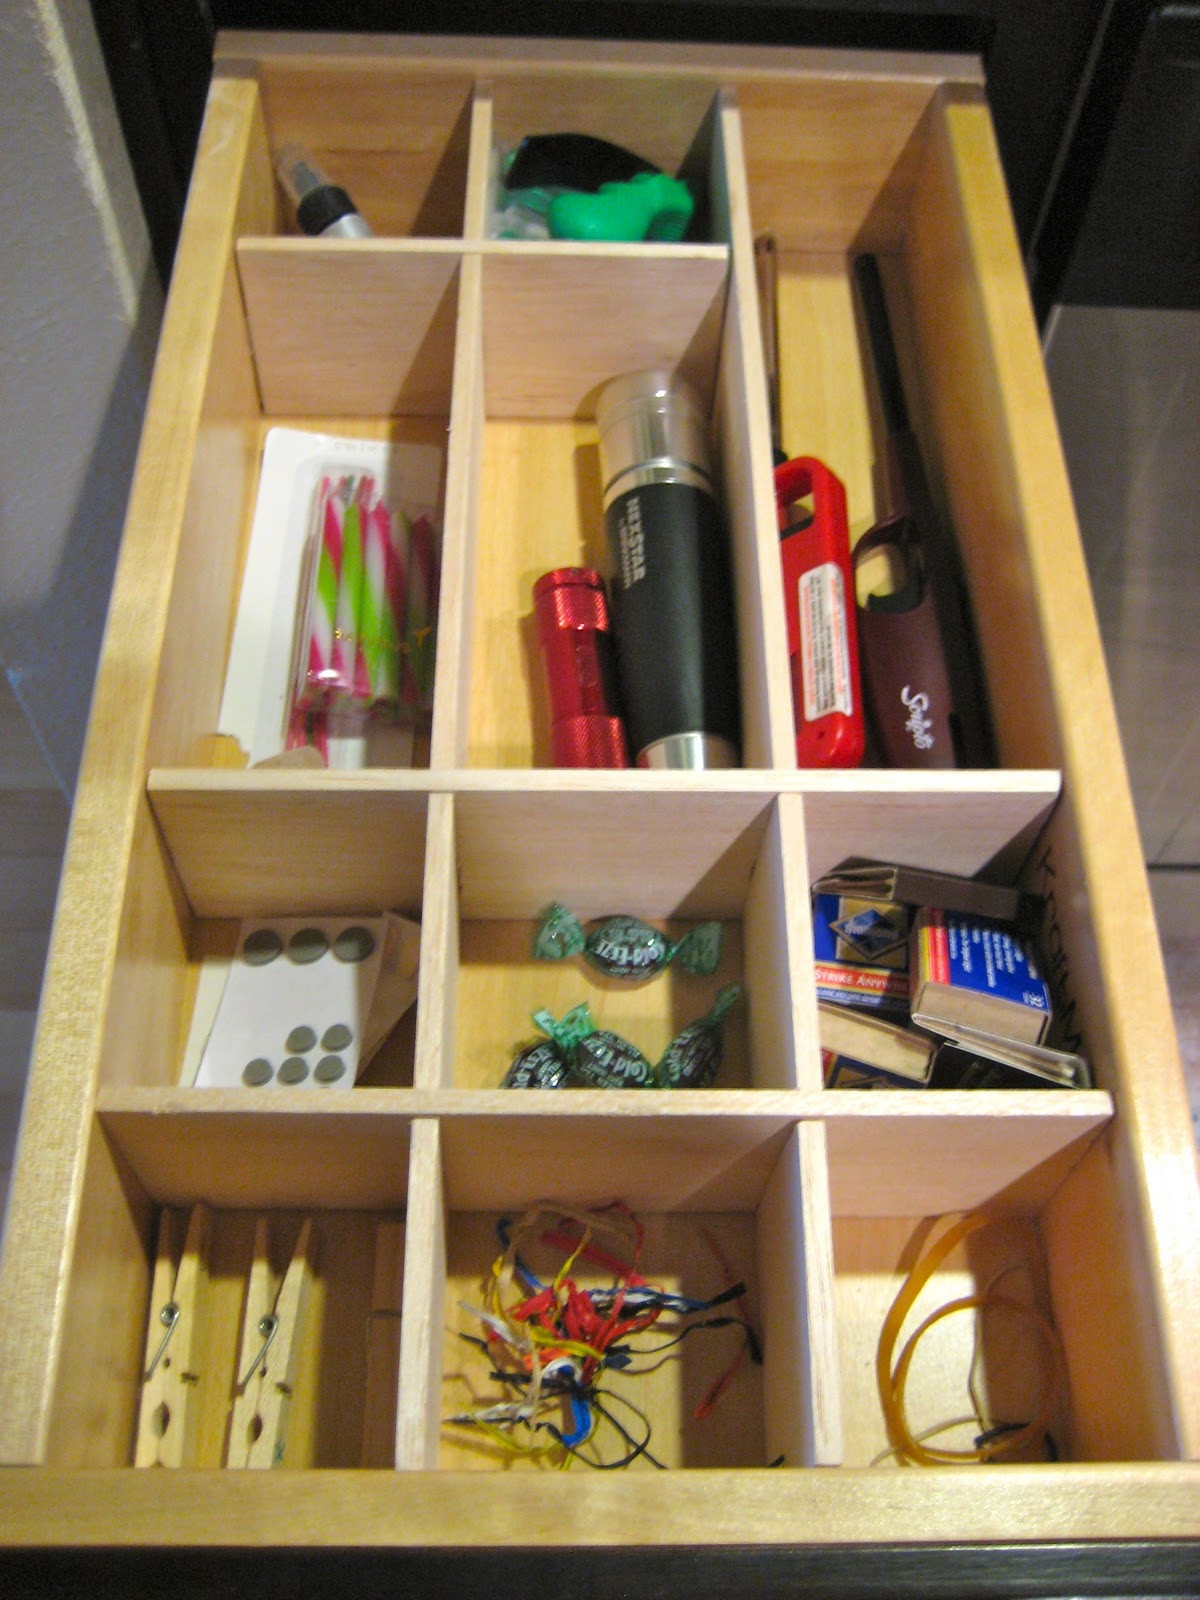 Best ideas about DIY Craft Organizer
. Save or Pin C R A F T 72 Drawer Organizer Part 2 C R A F T Now.